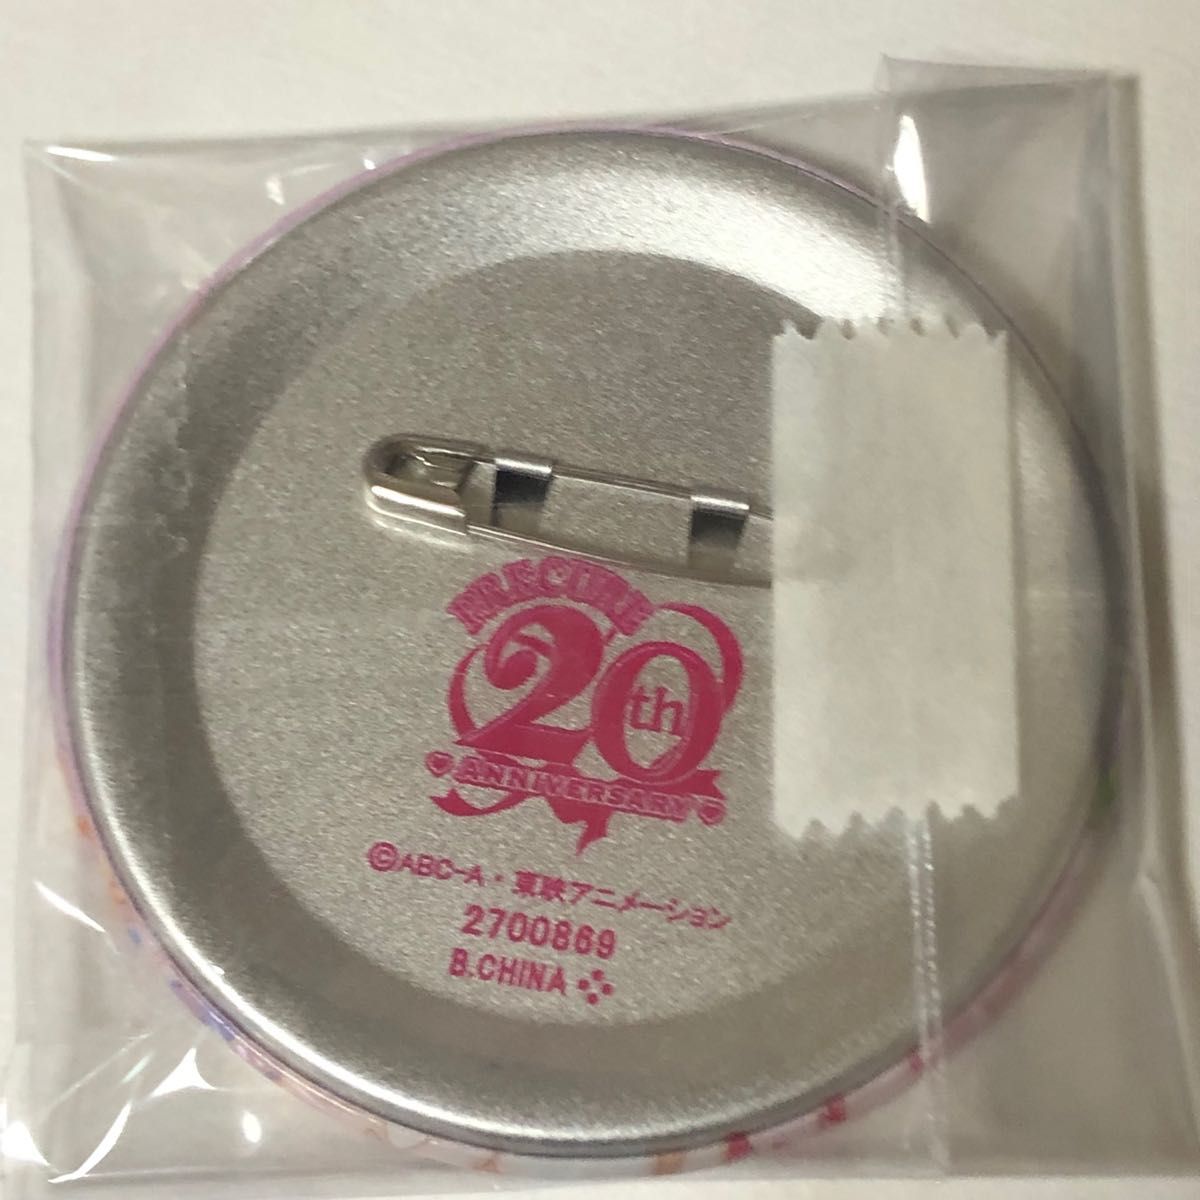 プリキュアオールスターズ BIG缶バッジ 20th Anniversary Yes!プリキュア5